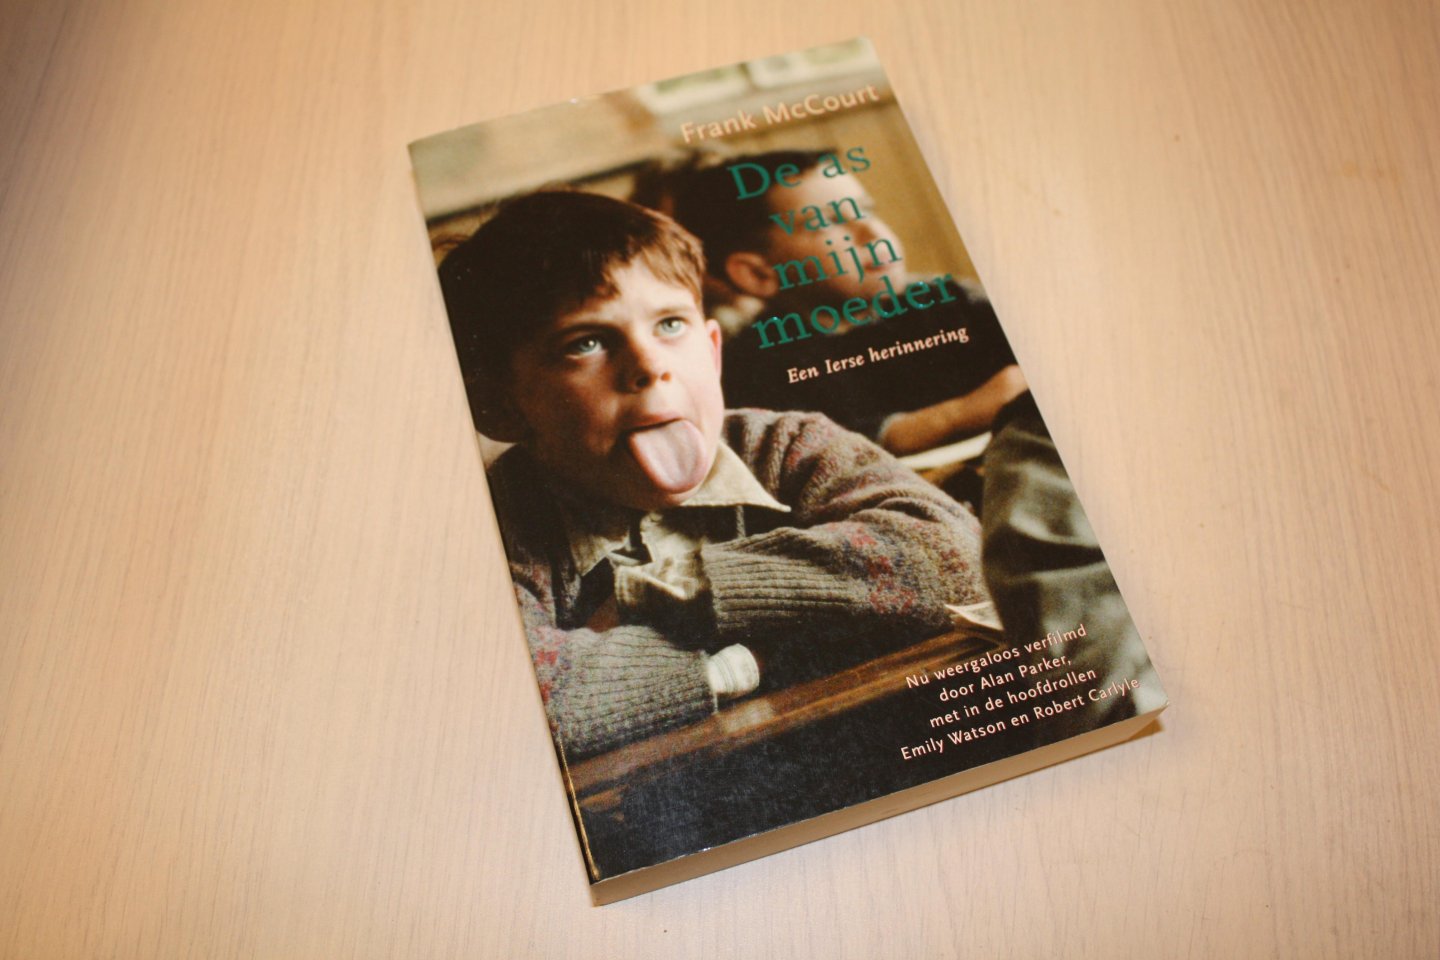 McCourt, Frank - De  as van mijn moeder (Prachtige autobiofrafische roman over een arm gezin in Ierland)